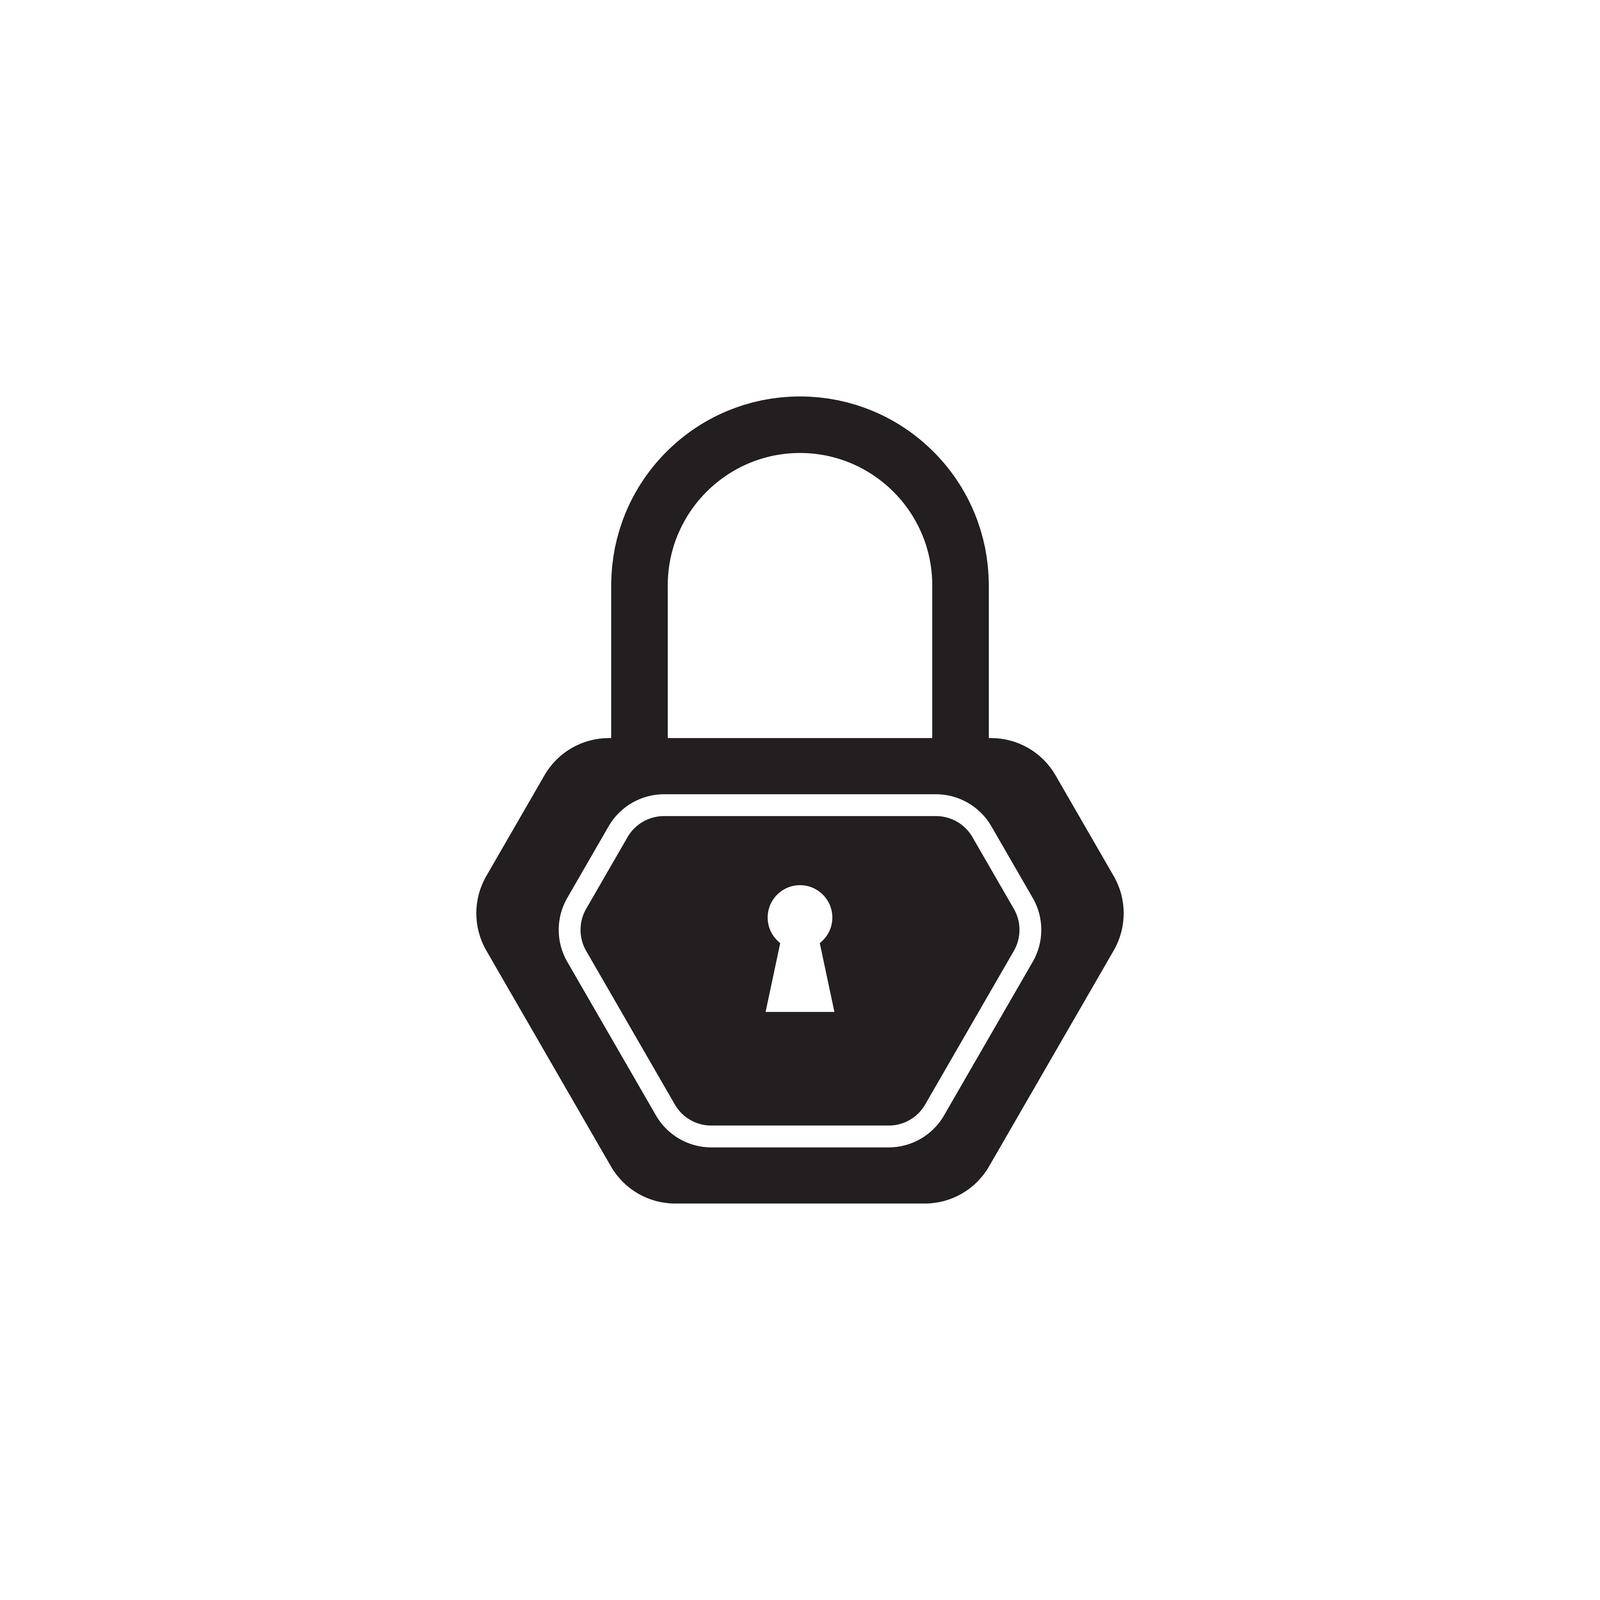 padlock logo icon by hasan02